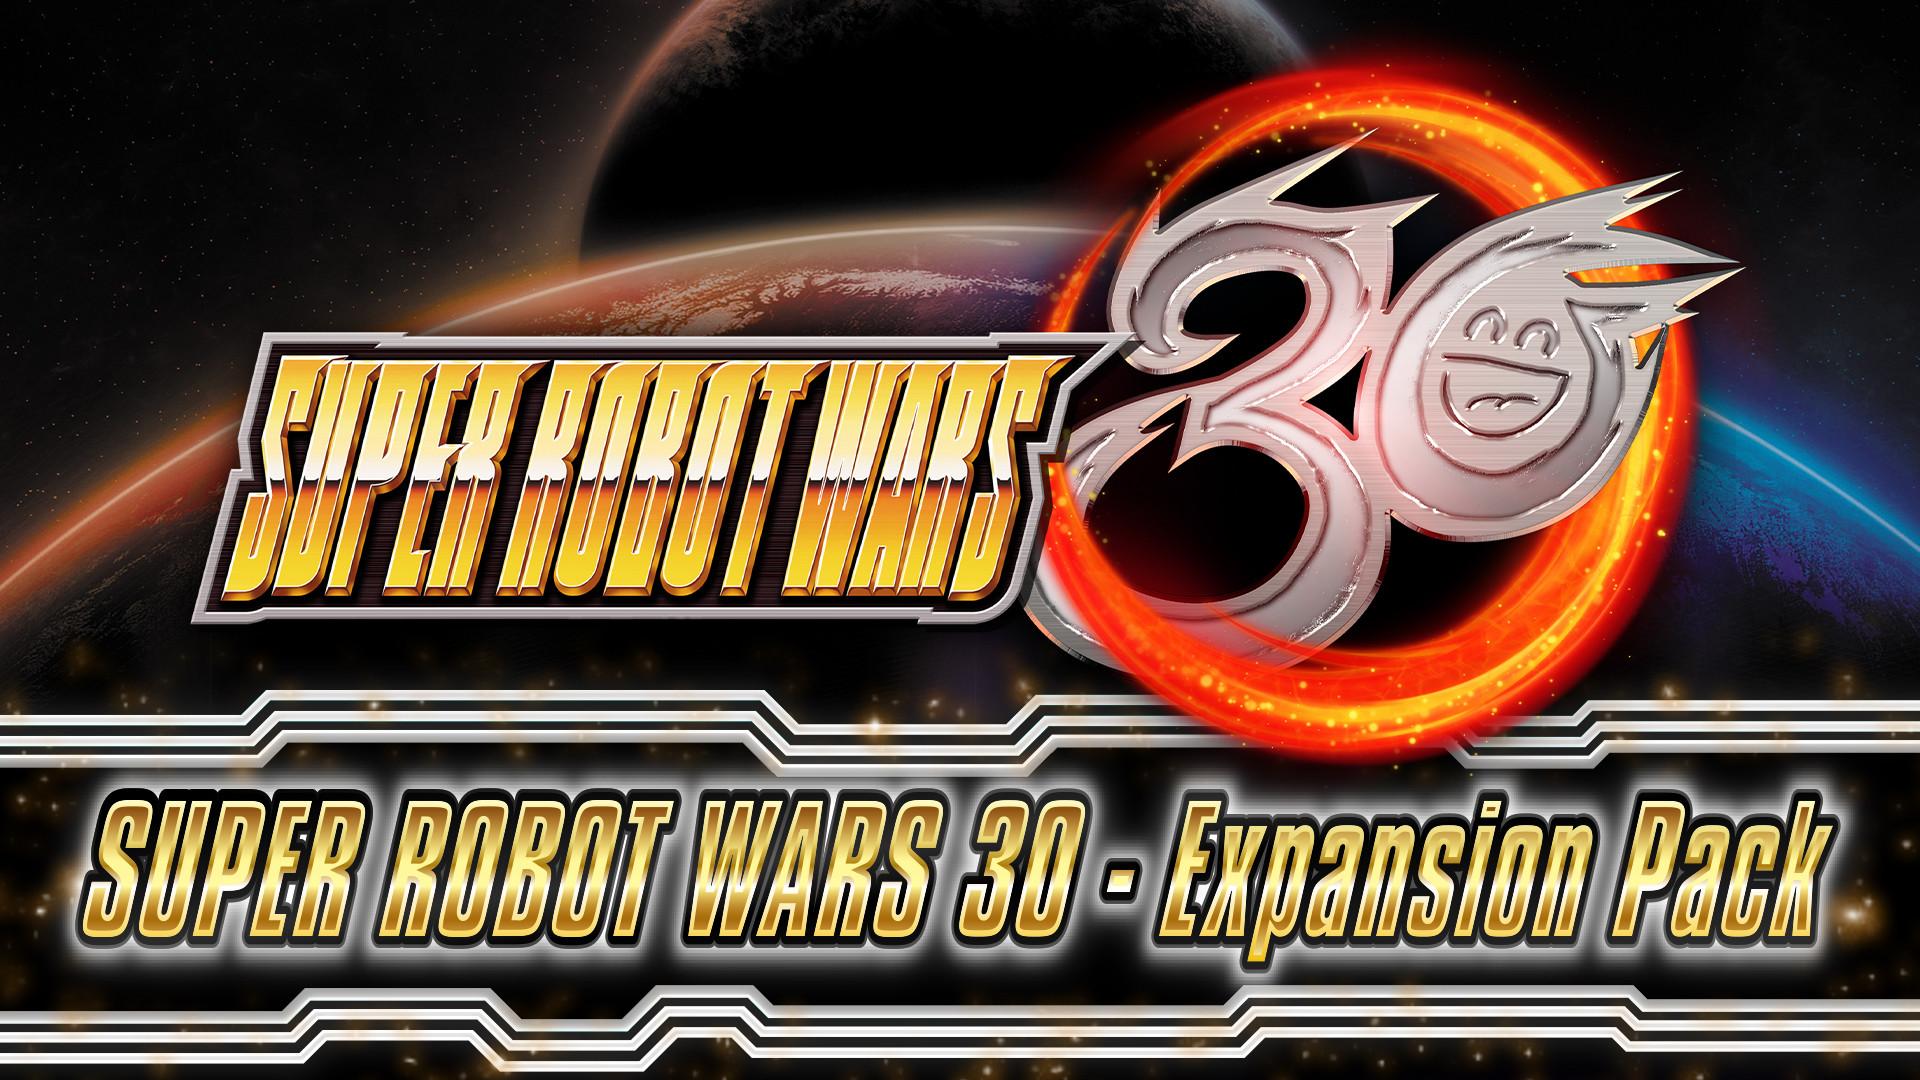 SUPER ROBOT WARS 30 - Expansion Pack